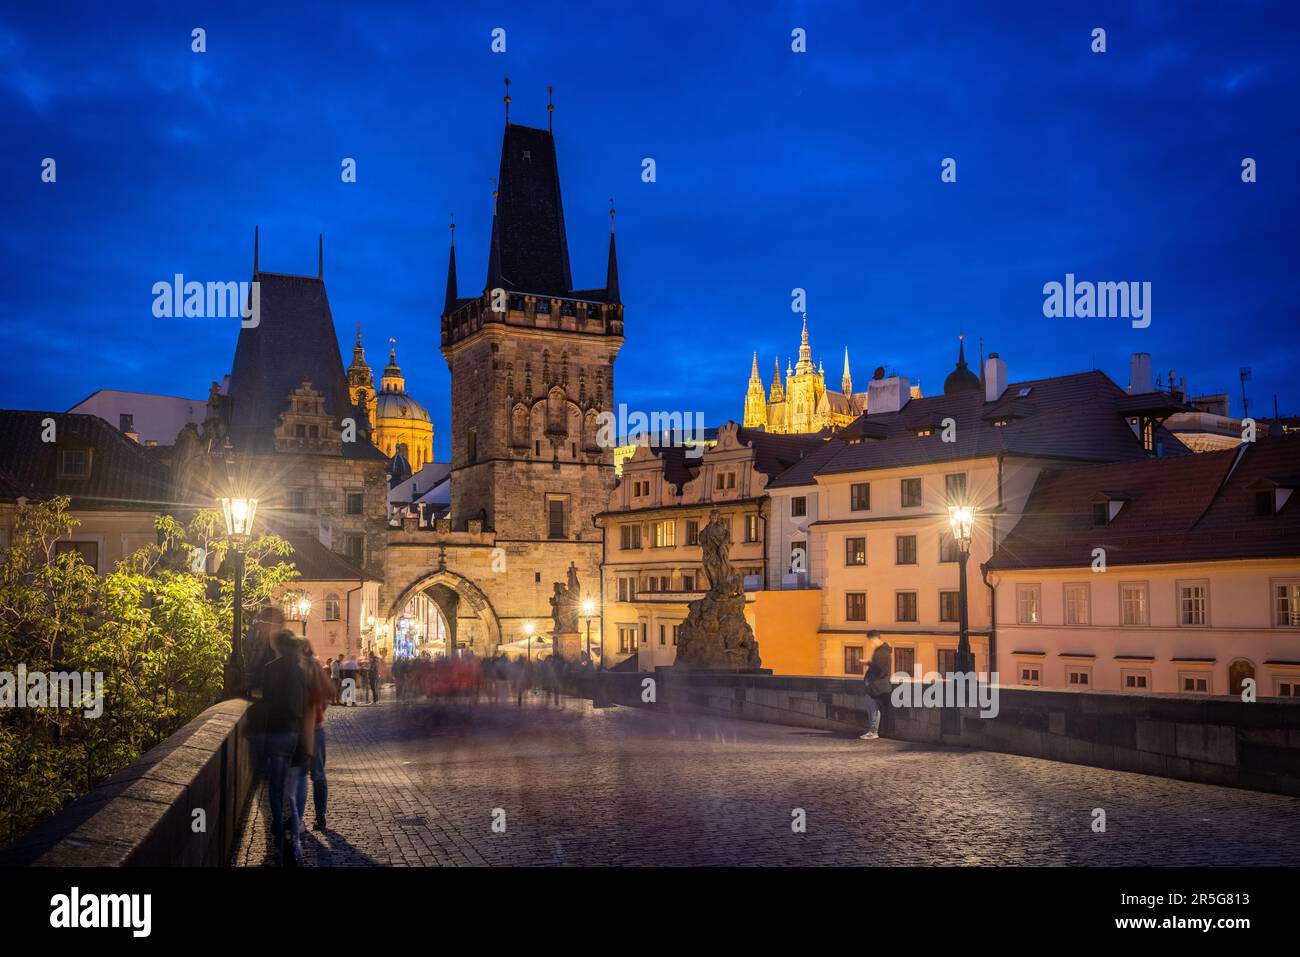 Praga: Vista sulla zona di Mala Strana con la torre del ponte occidentale del ponte carlo, St Nicholas e St. Cattedrale di Vito durante l'ora blu - passe Foto Stock